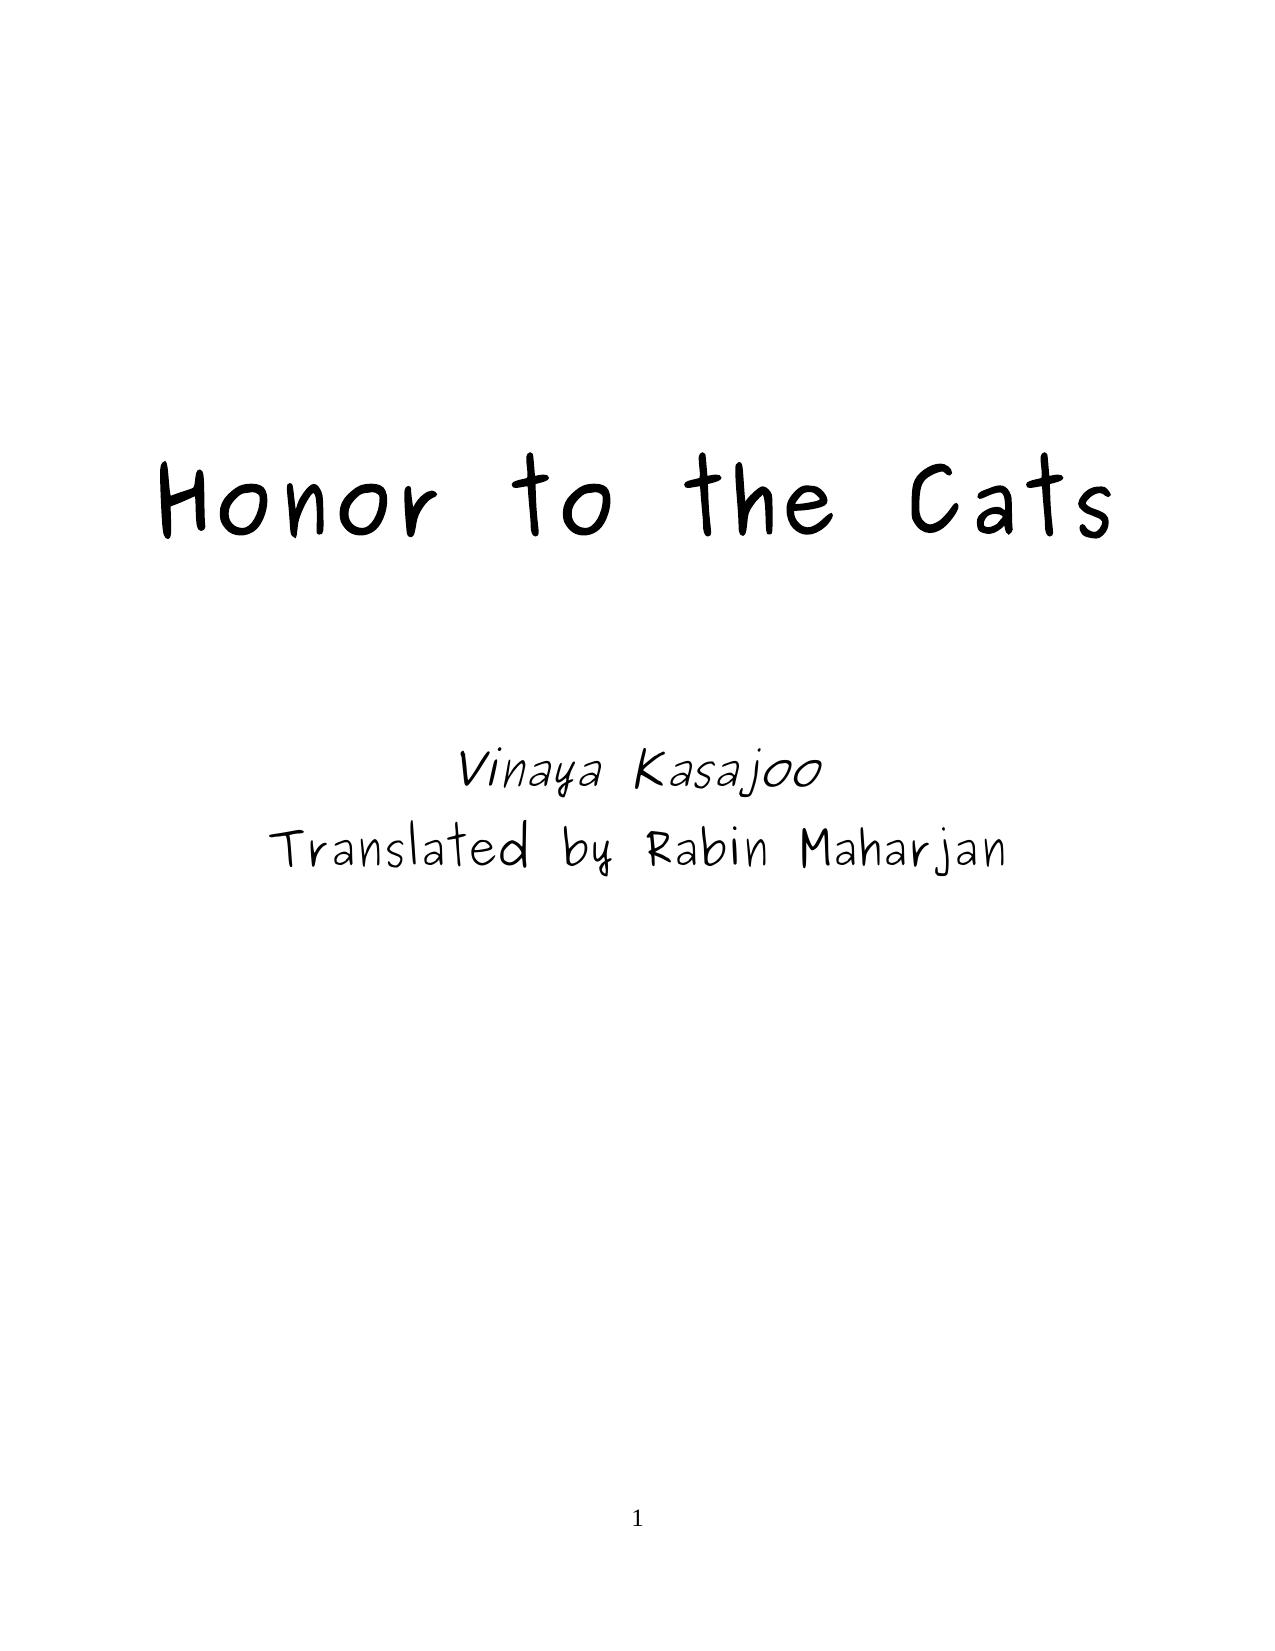 Kasajoo- Honor to the Cats